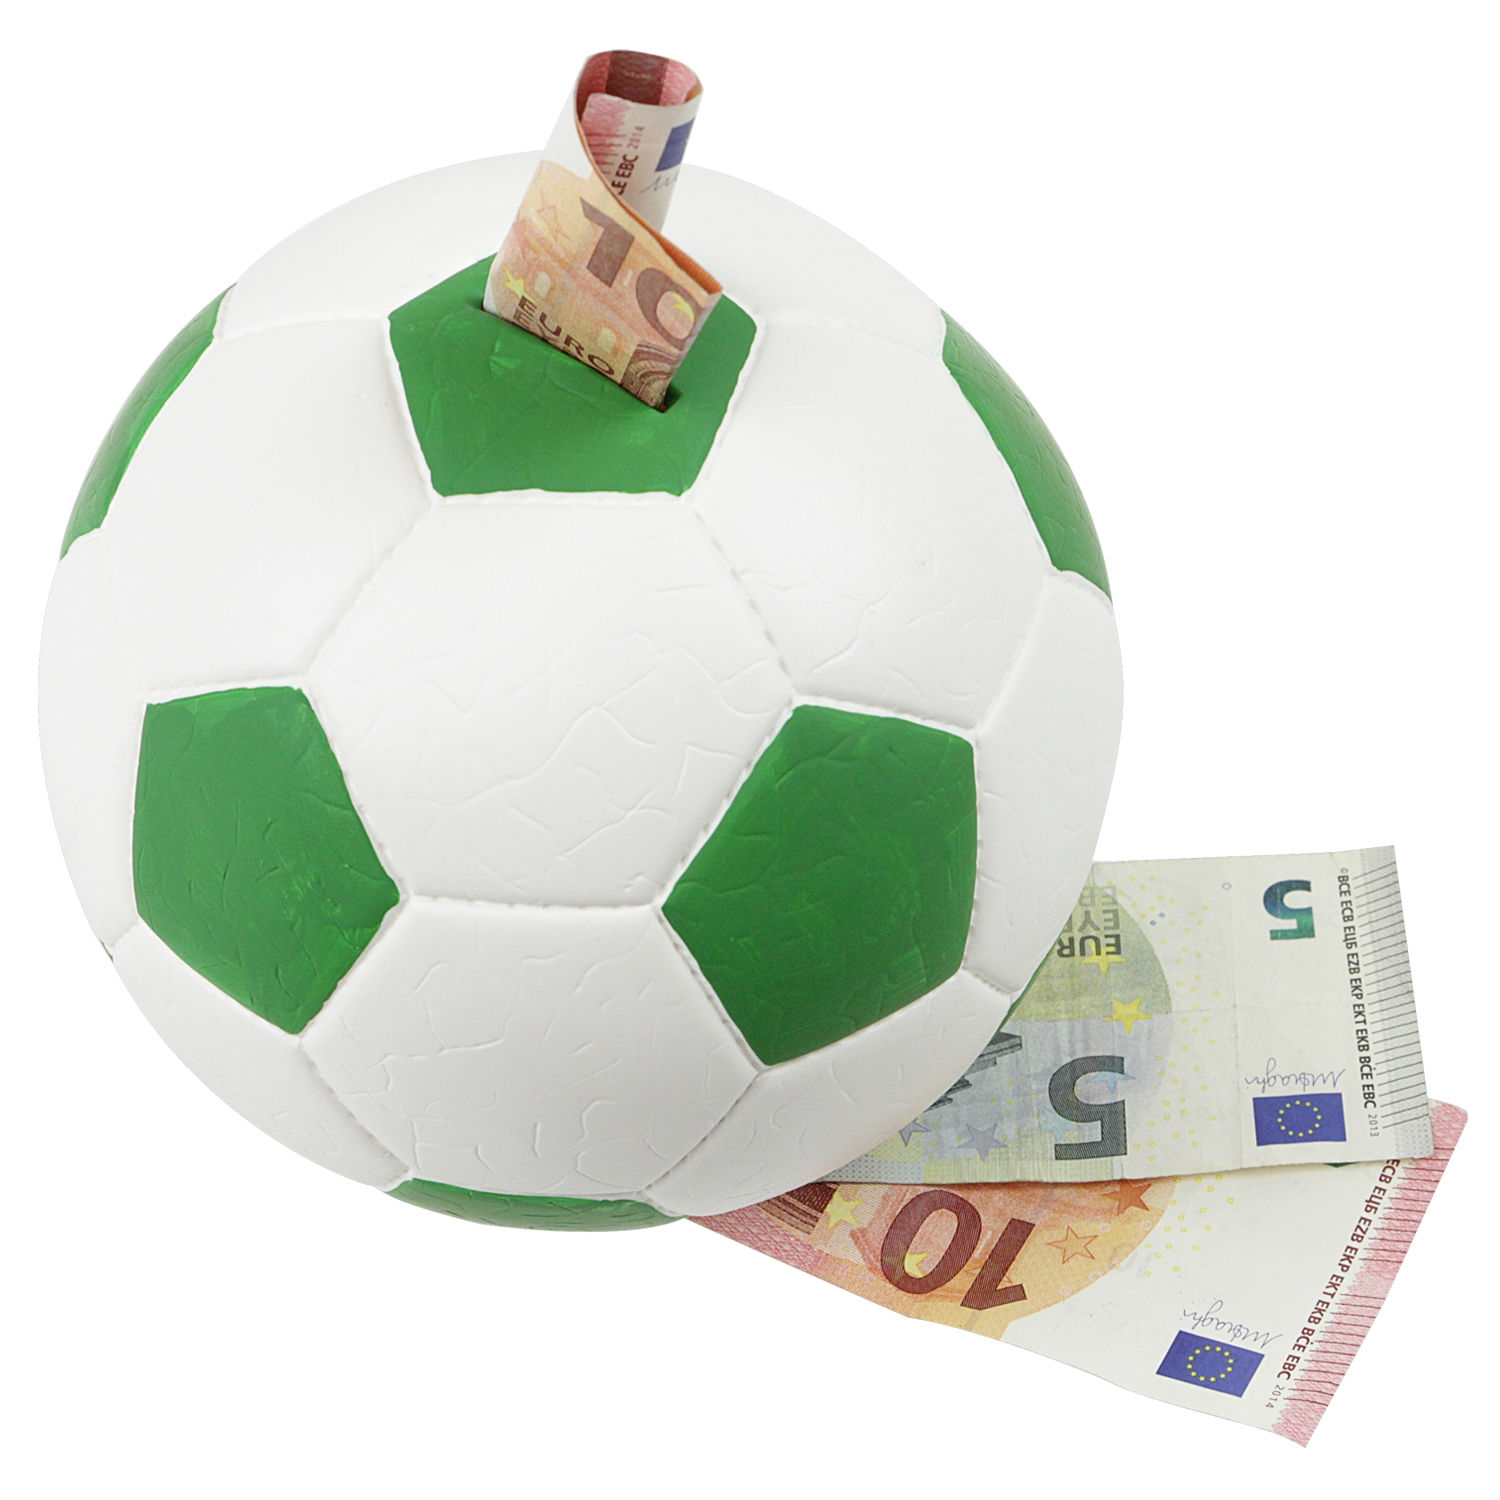 Spardose im Fußball-Look von HMF mit 15 cm Durchmesser in Grün